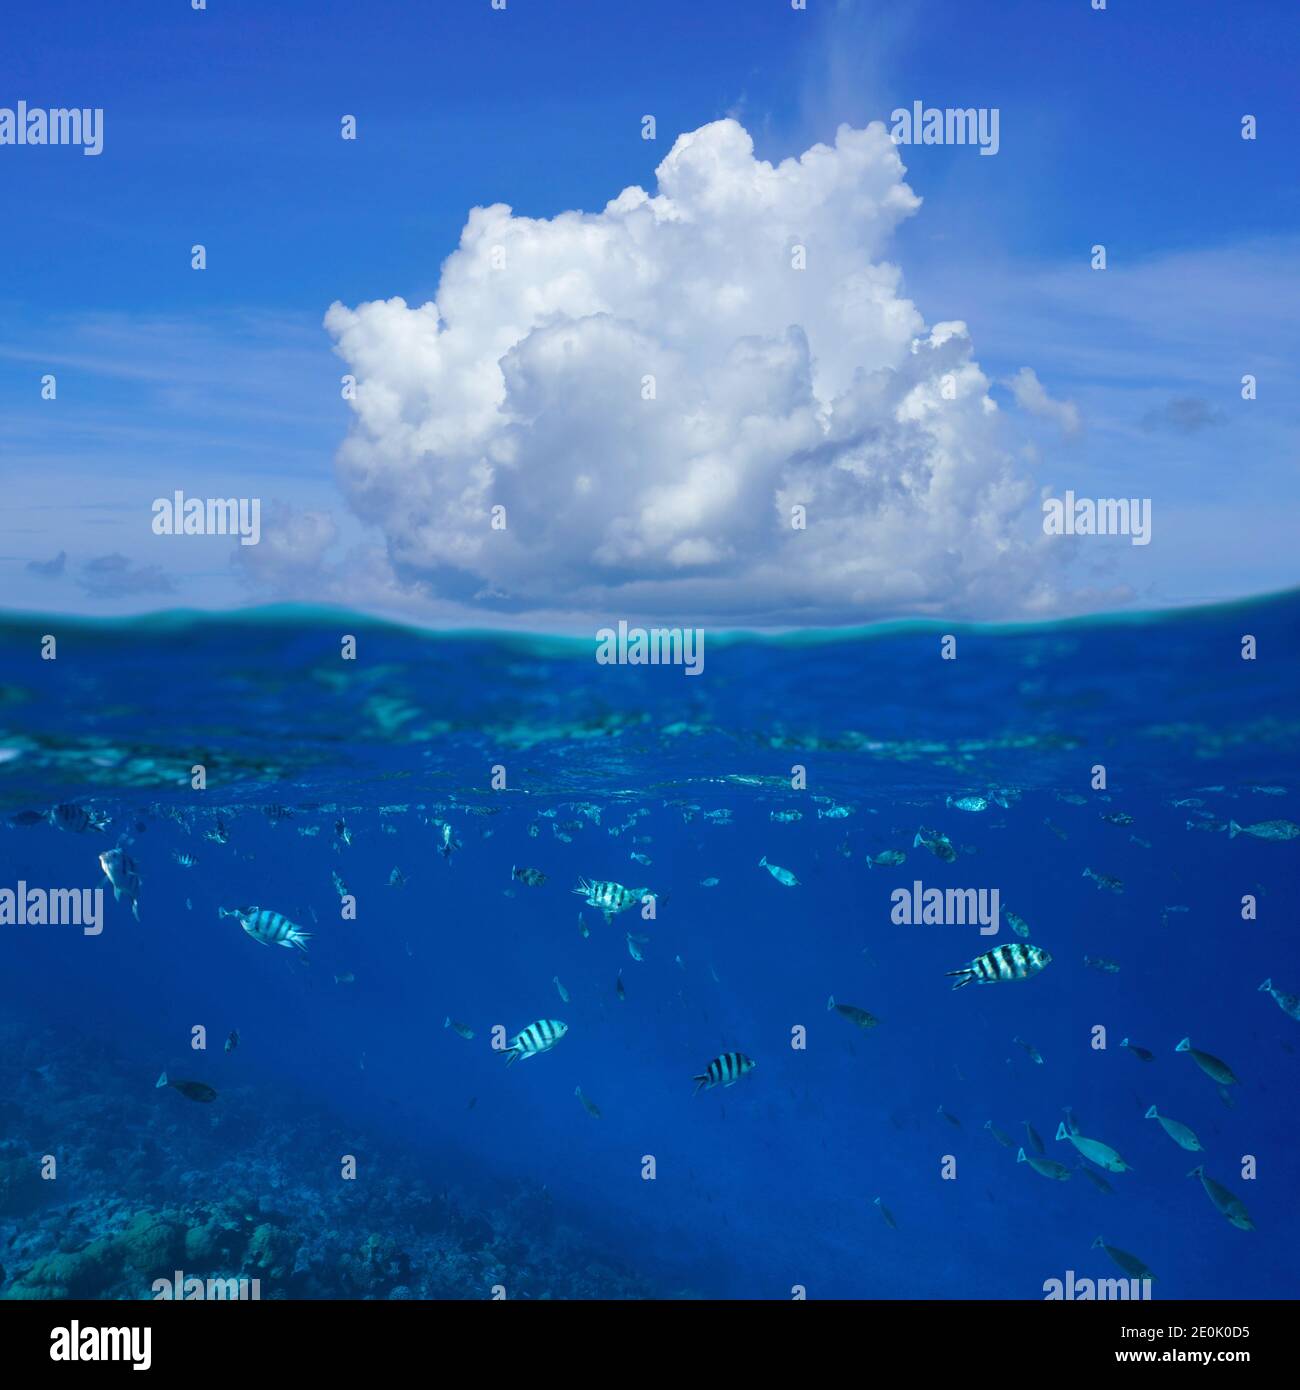 Una nuvola sopra la superficie del mare con pesci tropicali sott'acqua, vista divisa sopra e sotto l'acqua, oceano Pacifico, Rangiroa, Tuamotus, Polinesia Francese Foto Stock